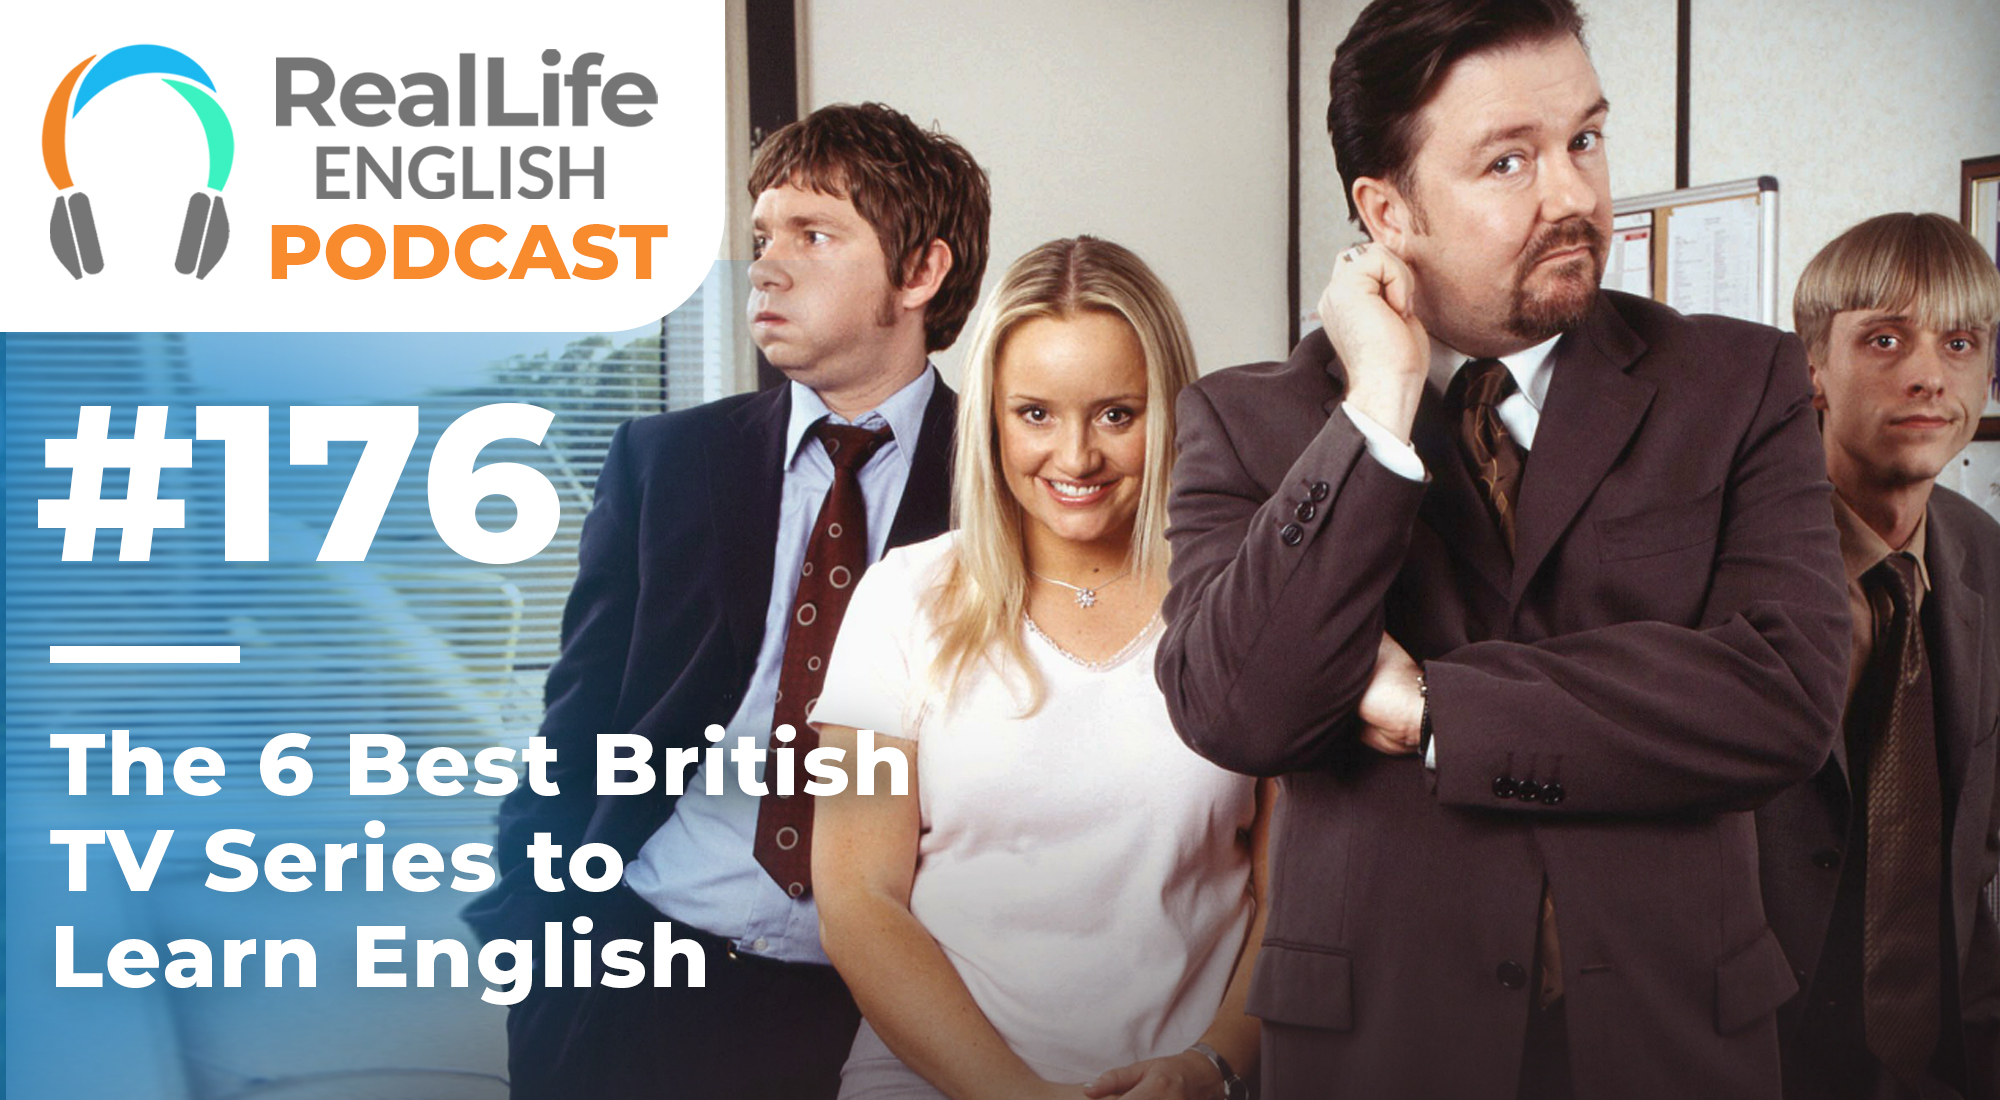 The english do life. Real Life English. English Podcast. Learn English Podcast. Learn English with TV Series.